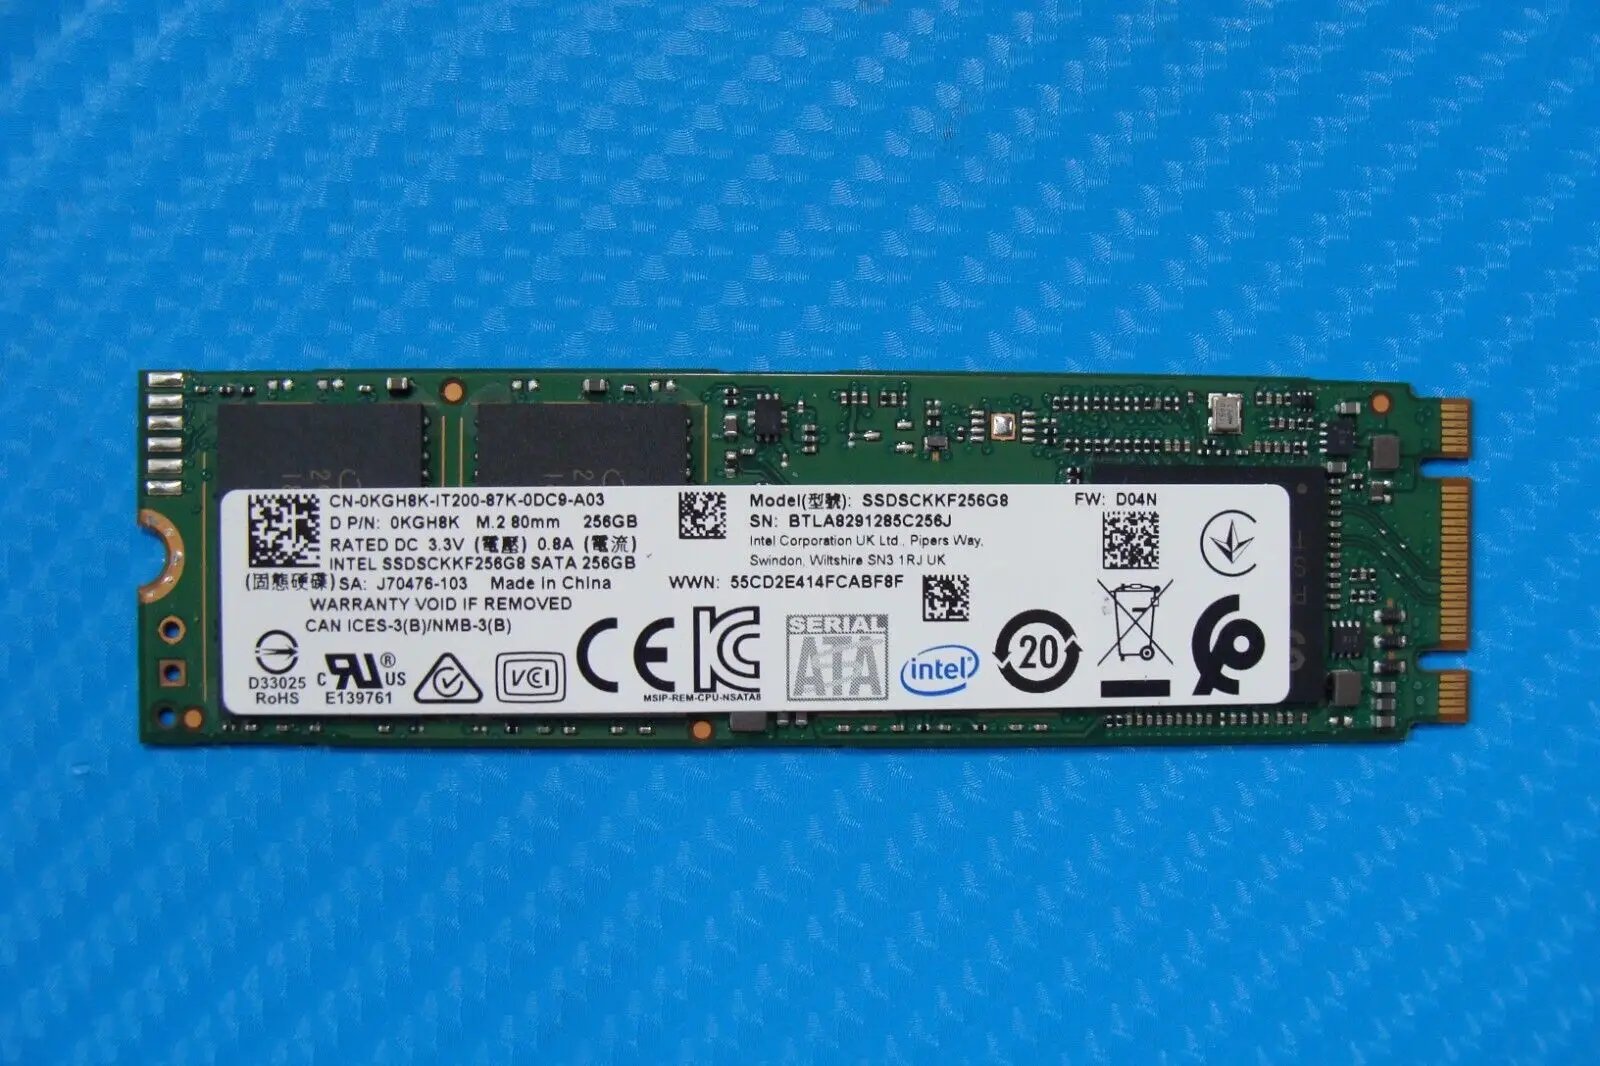 Dell G3 3579 Intel M.2 SATA 256GB SSD Solid State Drive KGH8K SSDSCKKF256G8